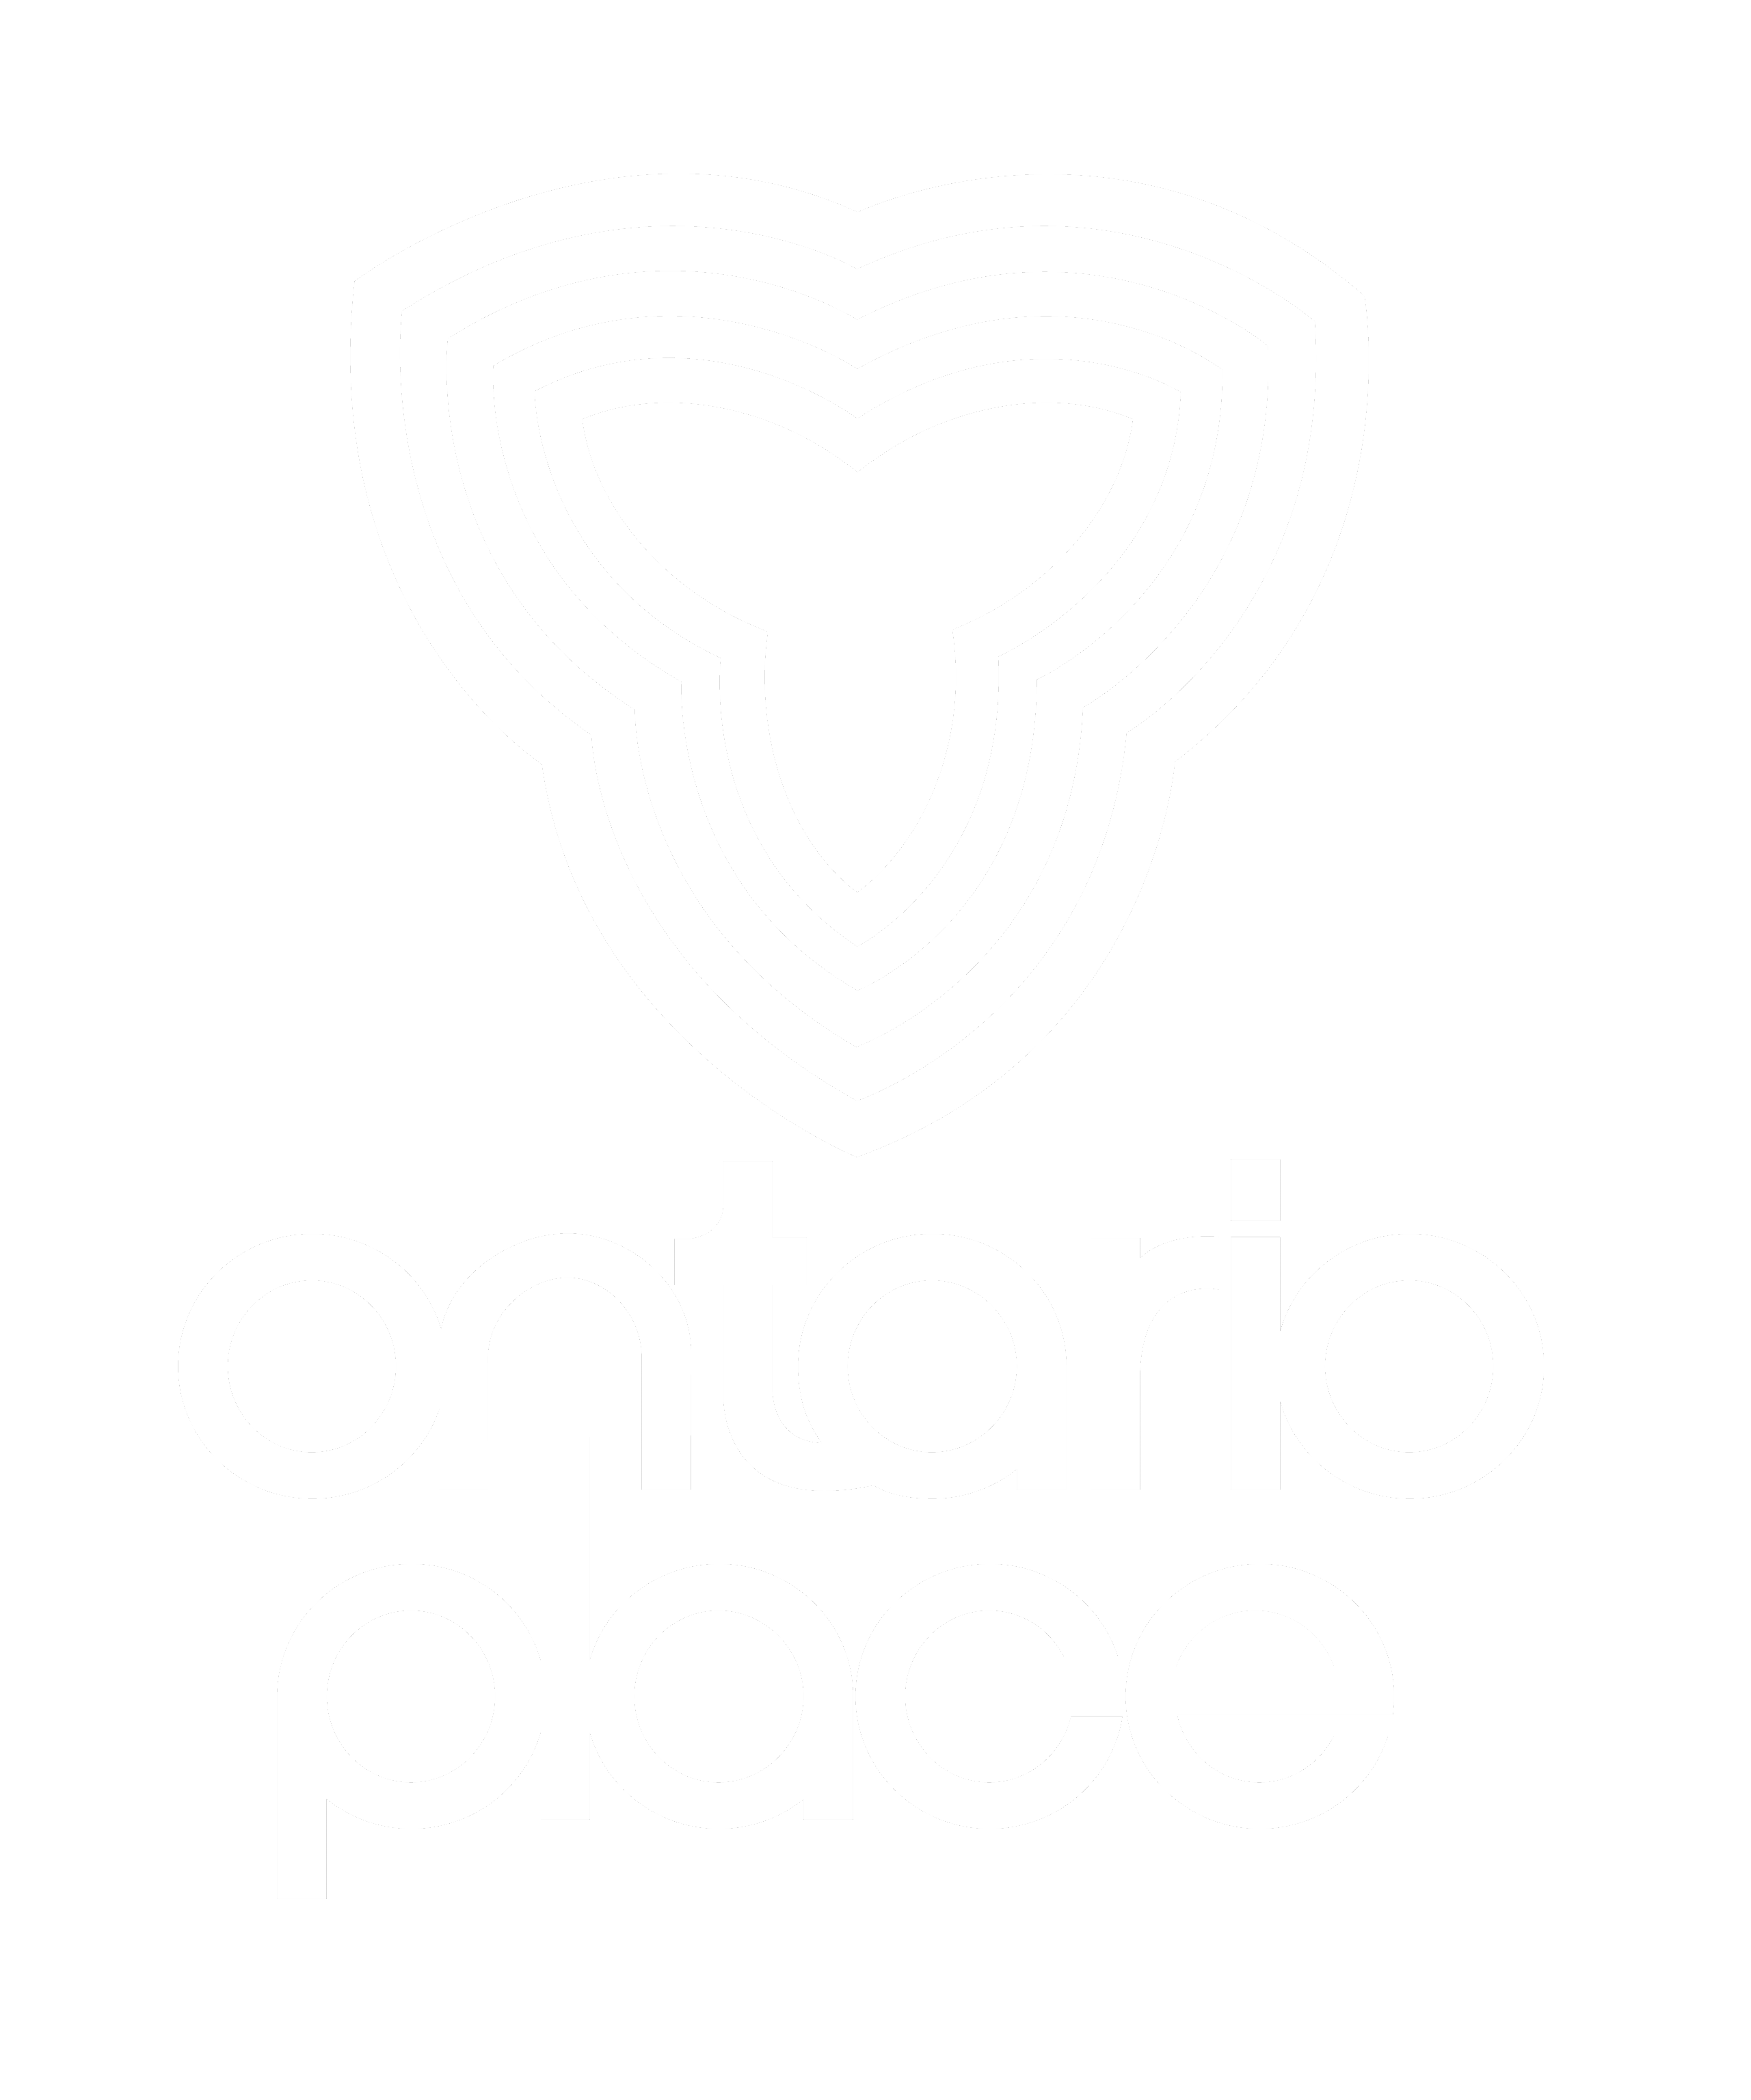 Ontario Place